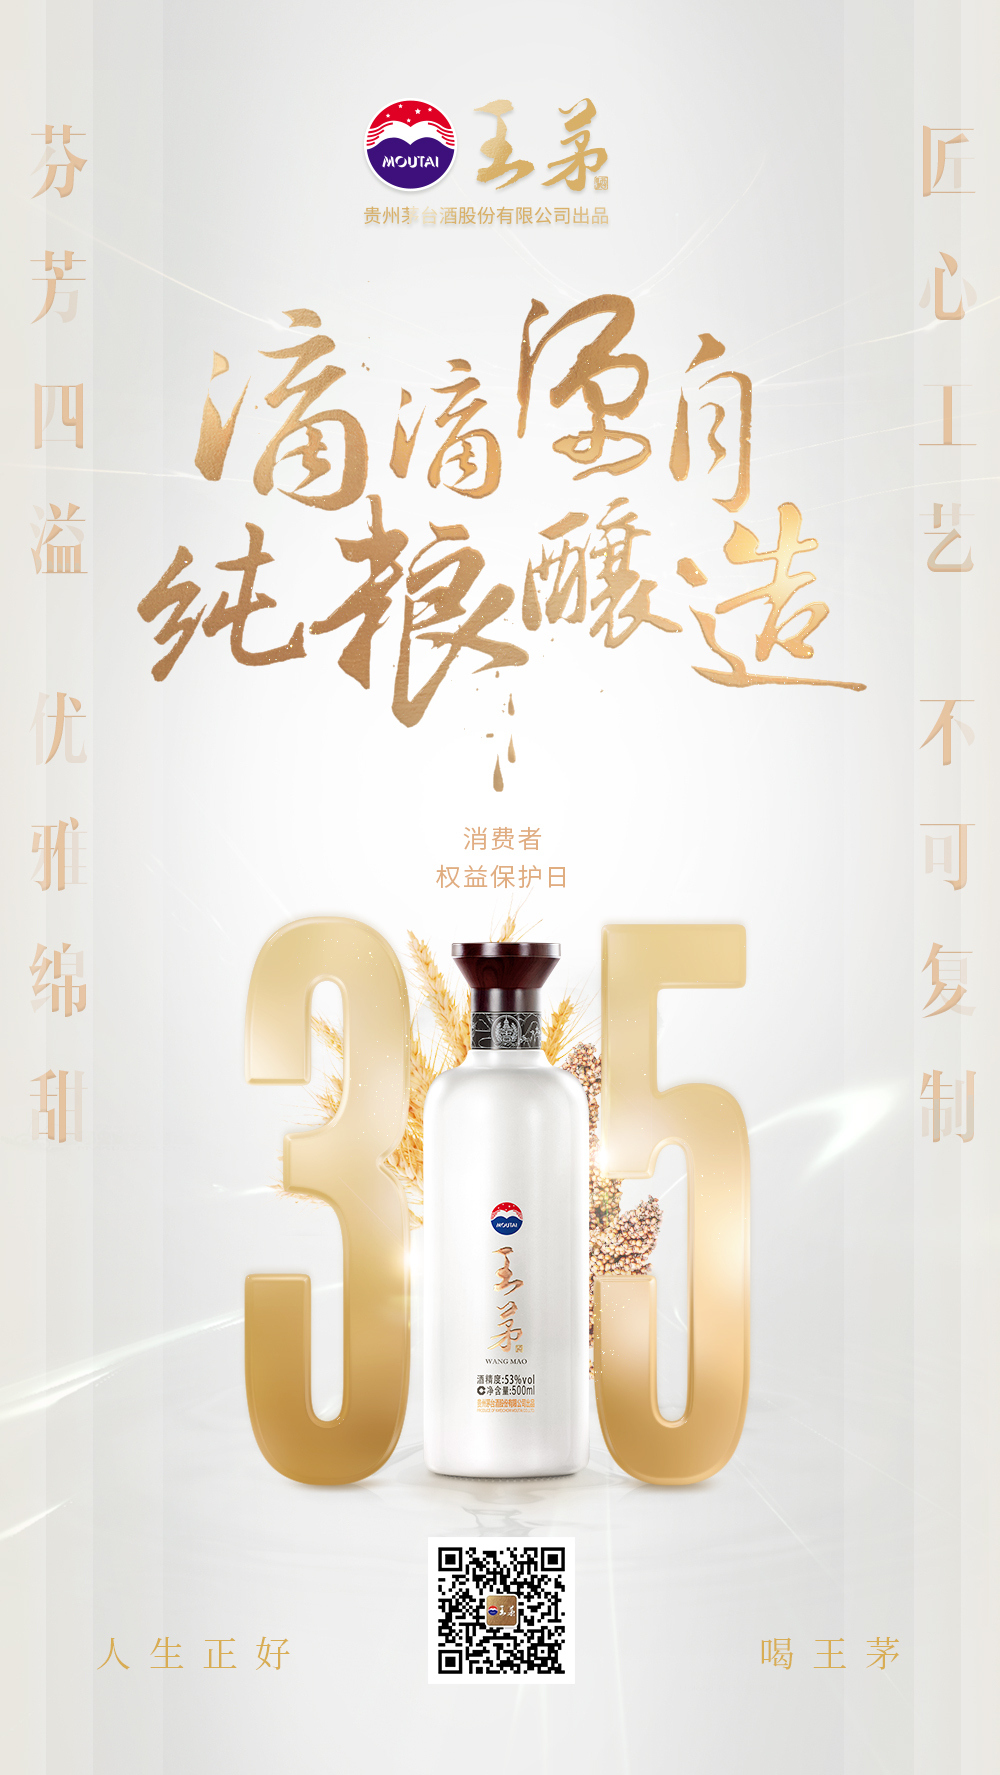 贵州茅台股份有限公司出品王茅酒+王茅酒+产品海报设计图1